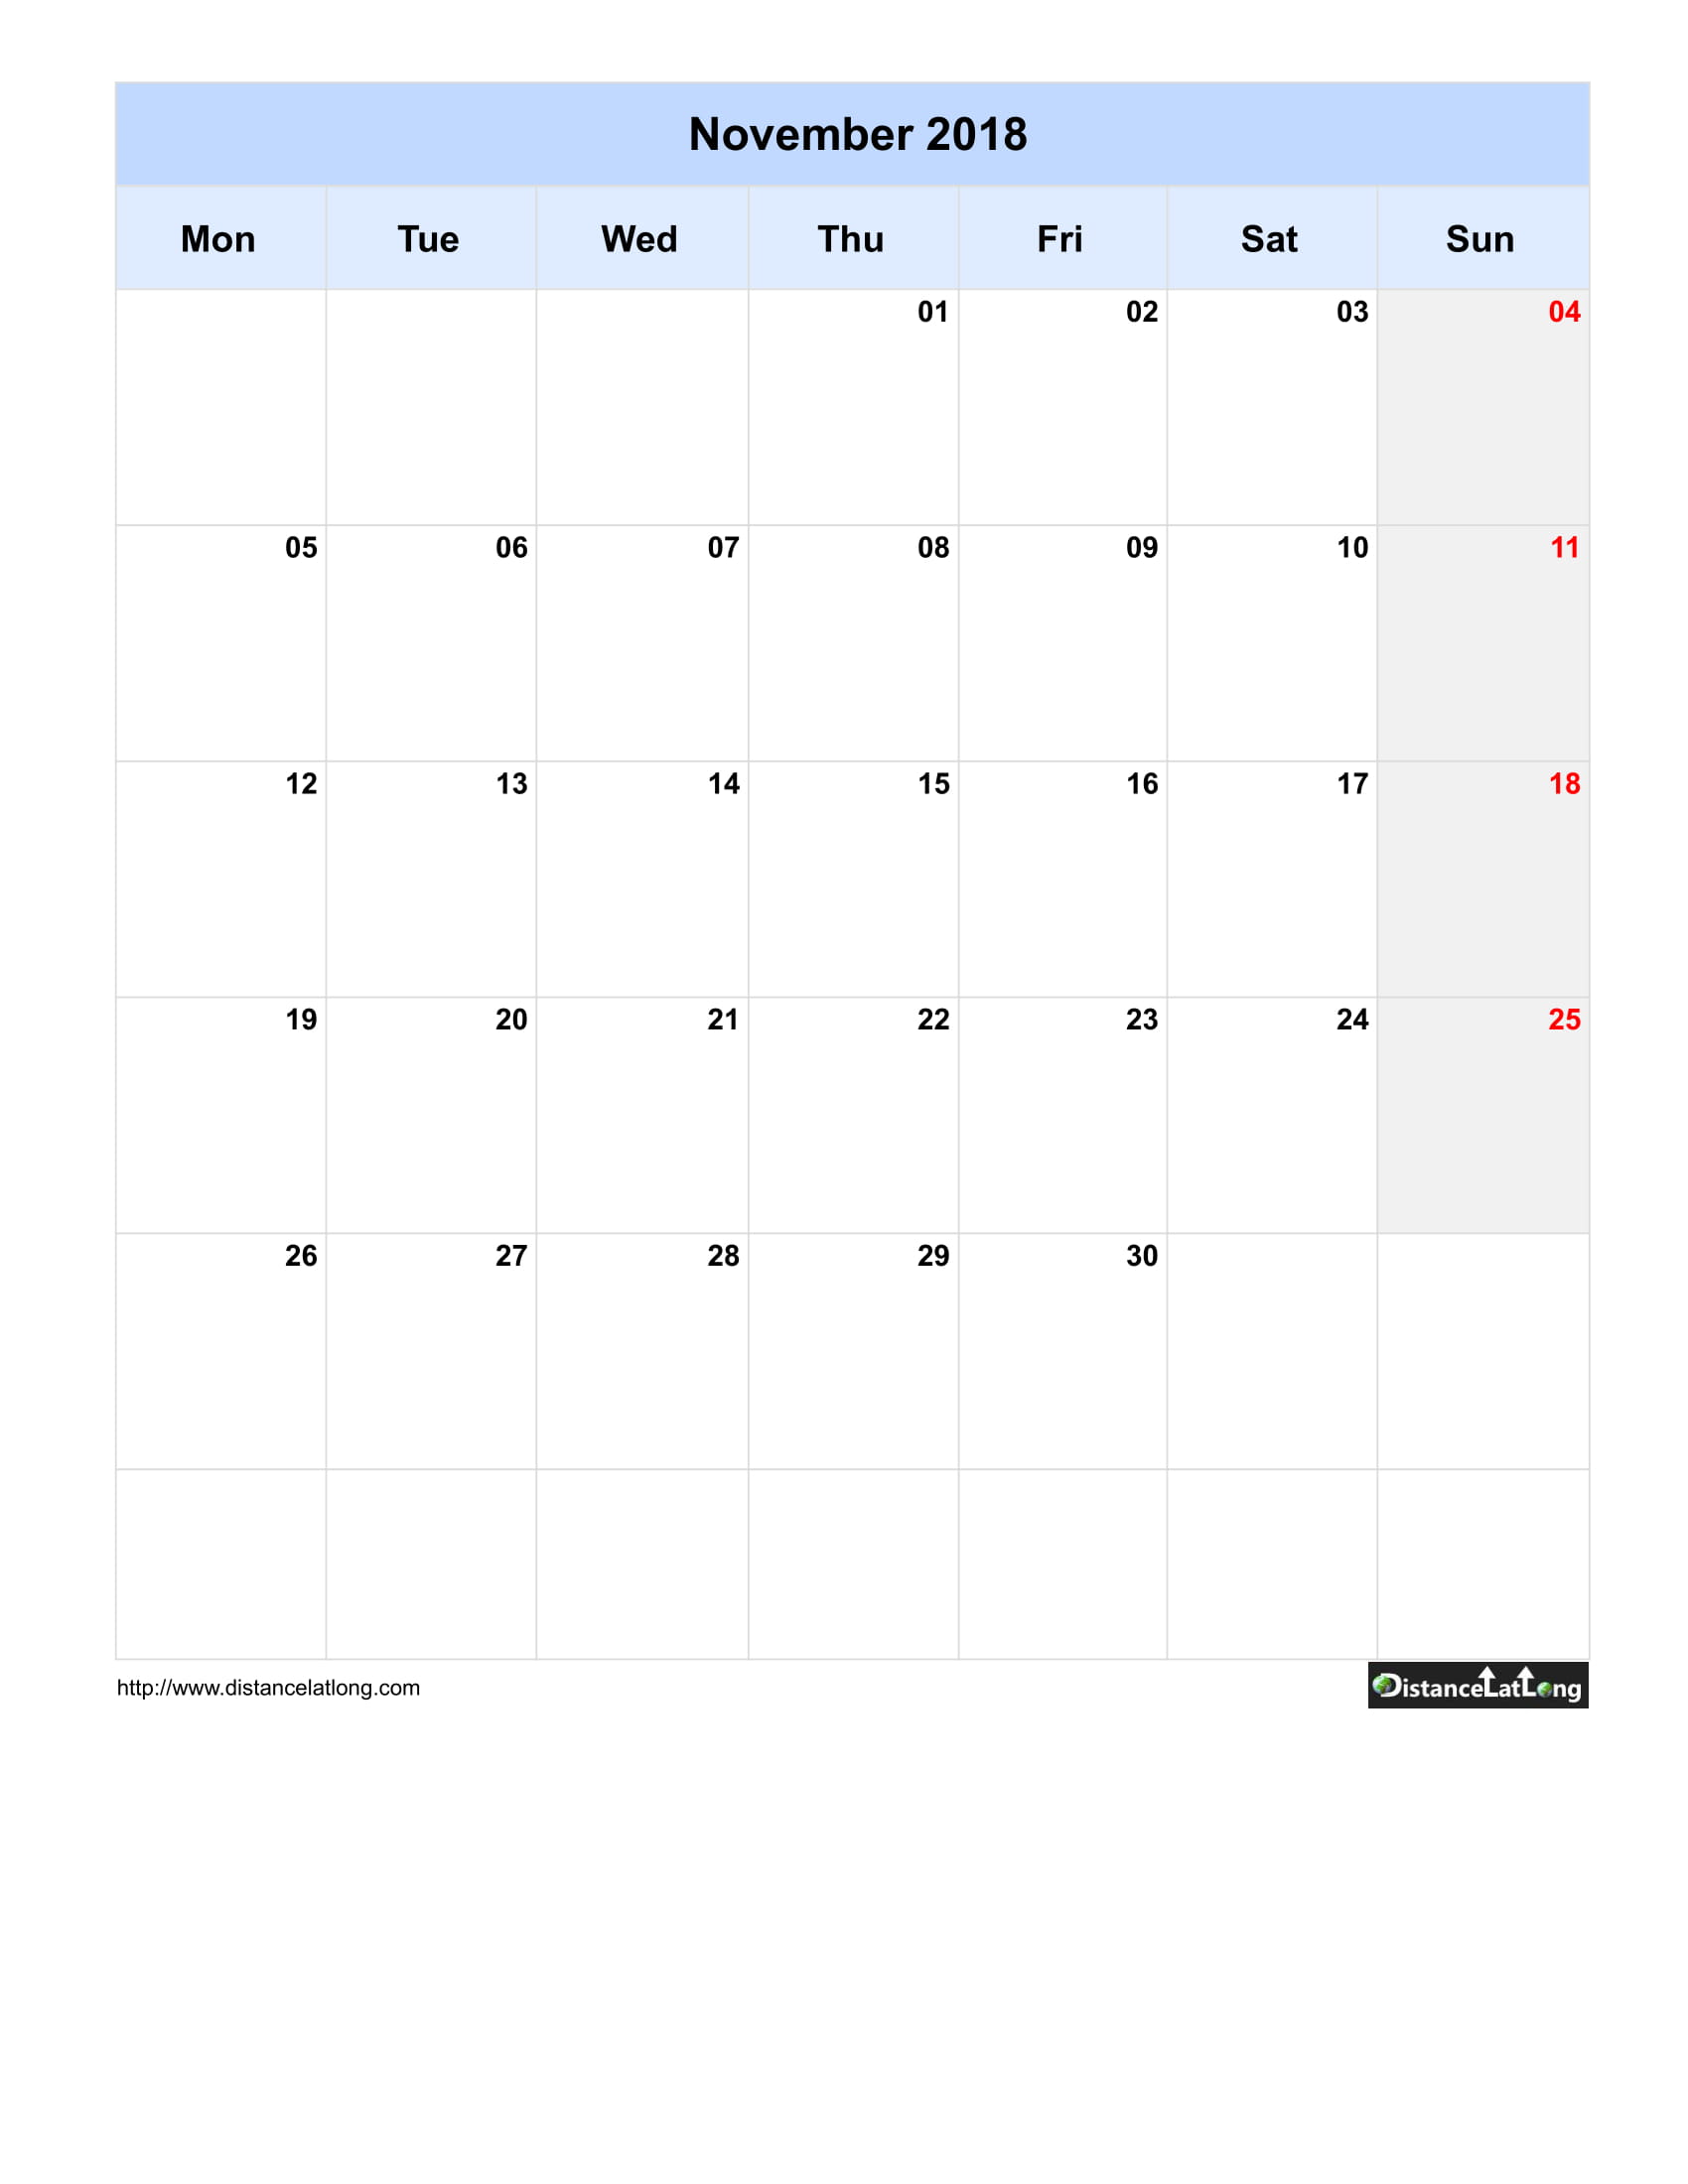 Pdf Calendars Template from www.distancelatlong.com